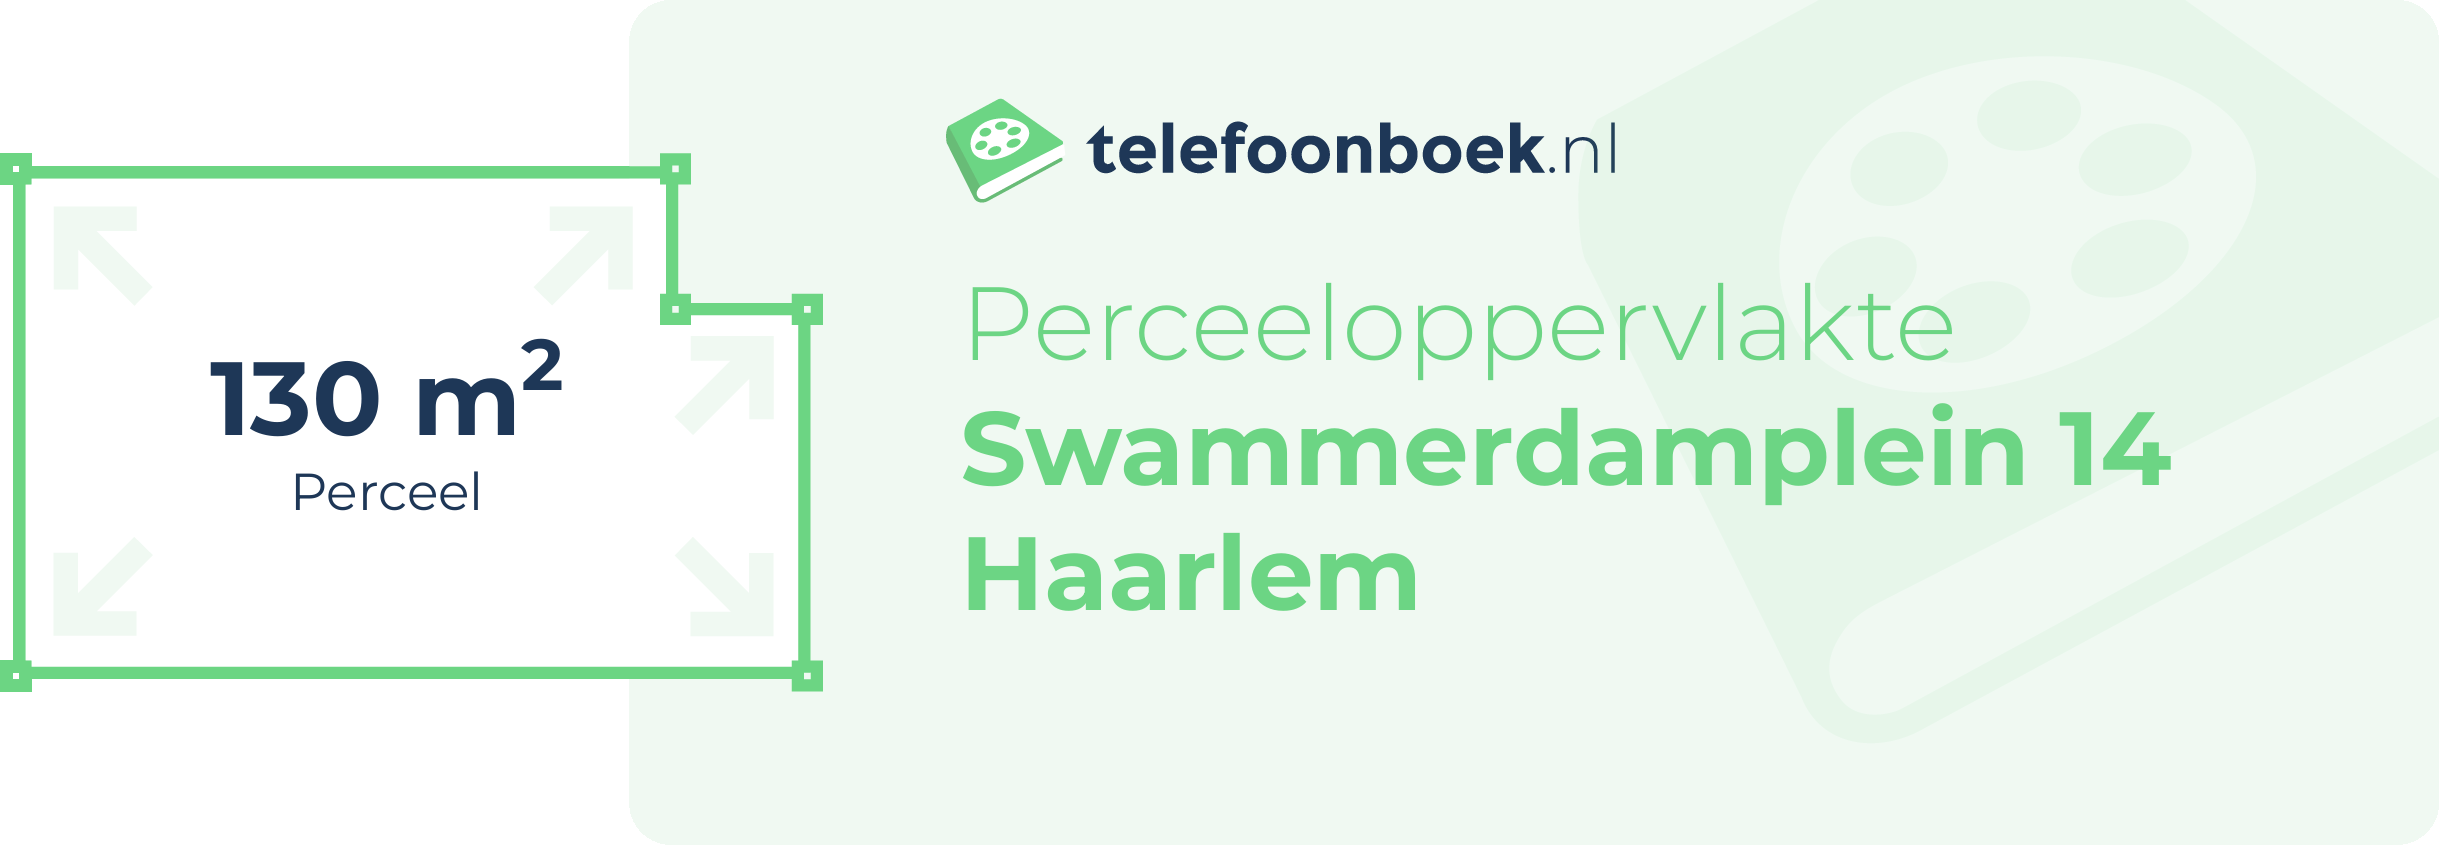 Perceeloppervlakte Swammerdamplein 14 Haarlem